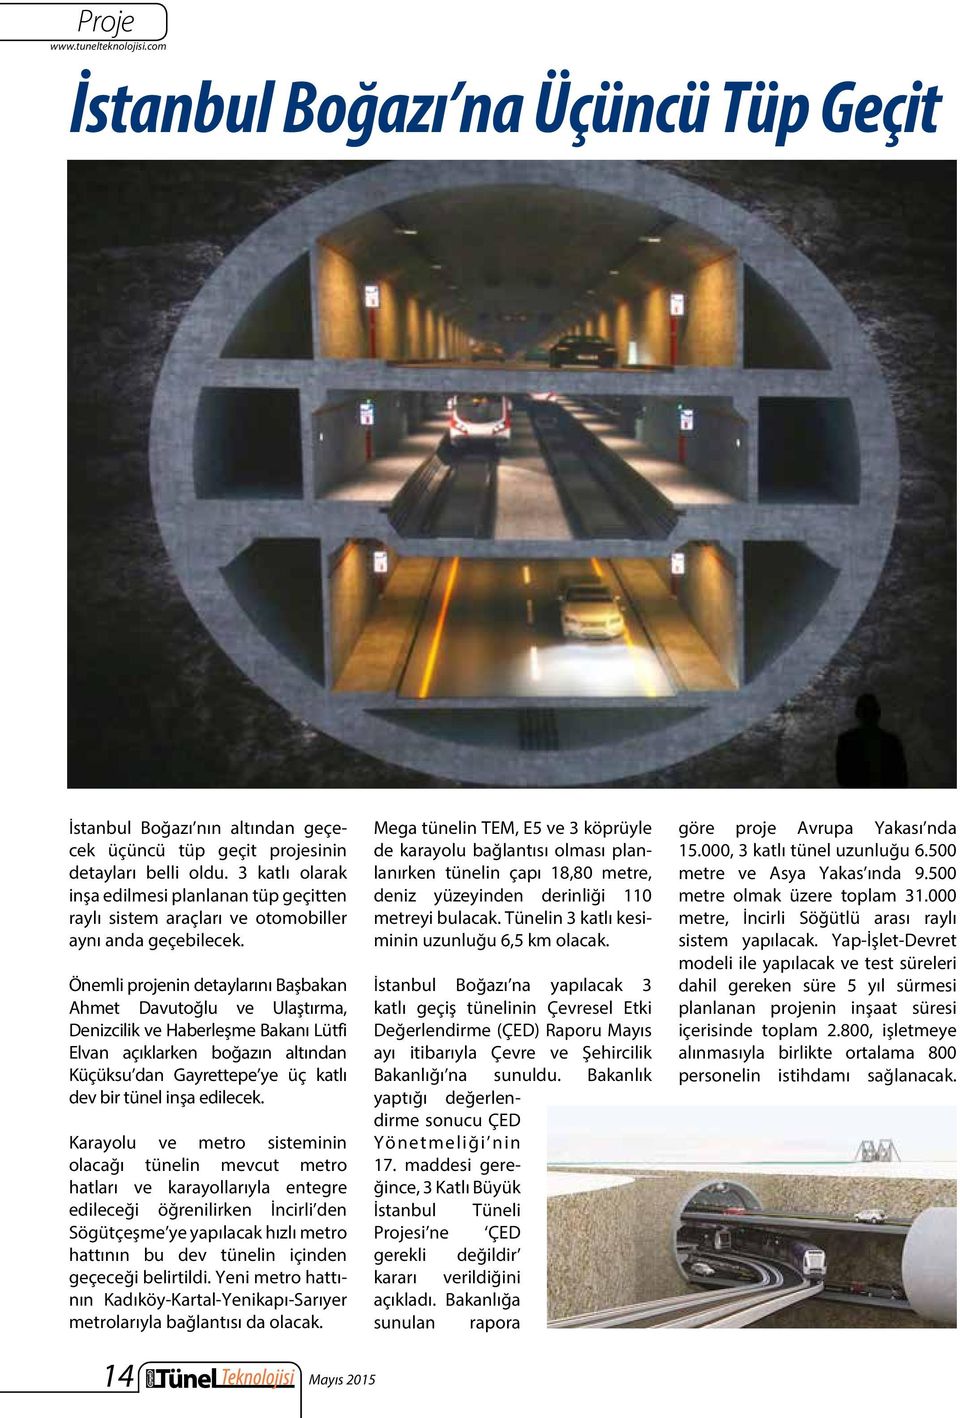 Önemli projenin detaylarını Başbakan Ahmet Davutoğlu ve Ulaştırma, Denizcilik ve Haberleşme Bakanı Lütfi Elvan açıklarken boğazın altından Küçüksu dan Gayrettepe ye üç katlı dev bir tünel inşa